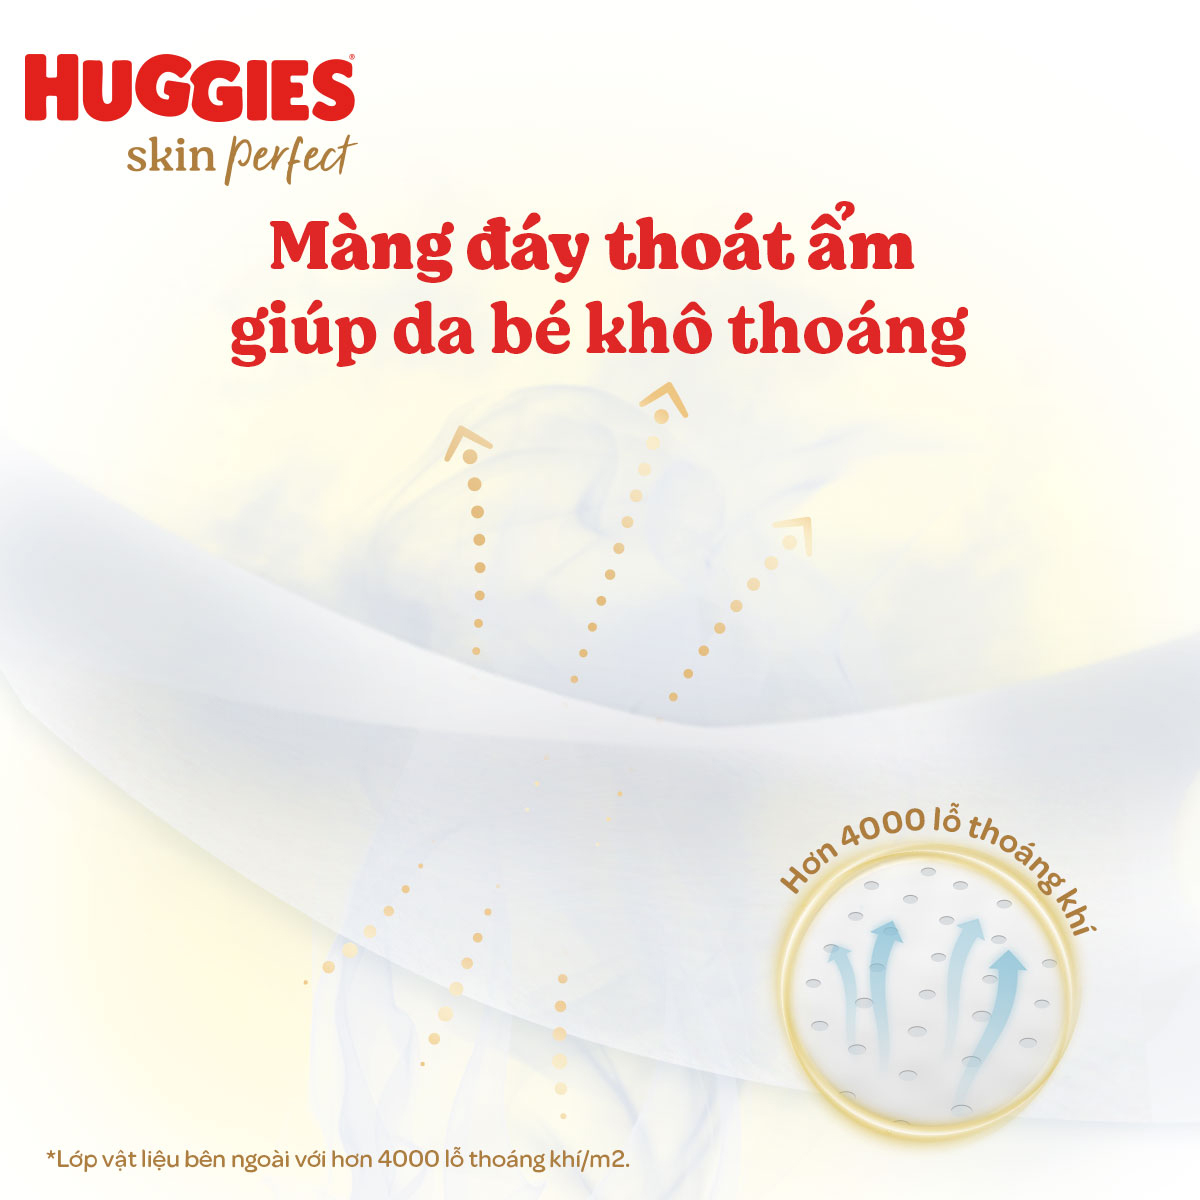 Hình ảnh Tã quần Huggies Skin Perfect XL Super Jumbo 52+6 miếng với 2 vùng thấm giảm kích ứng da